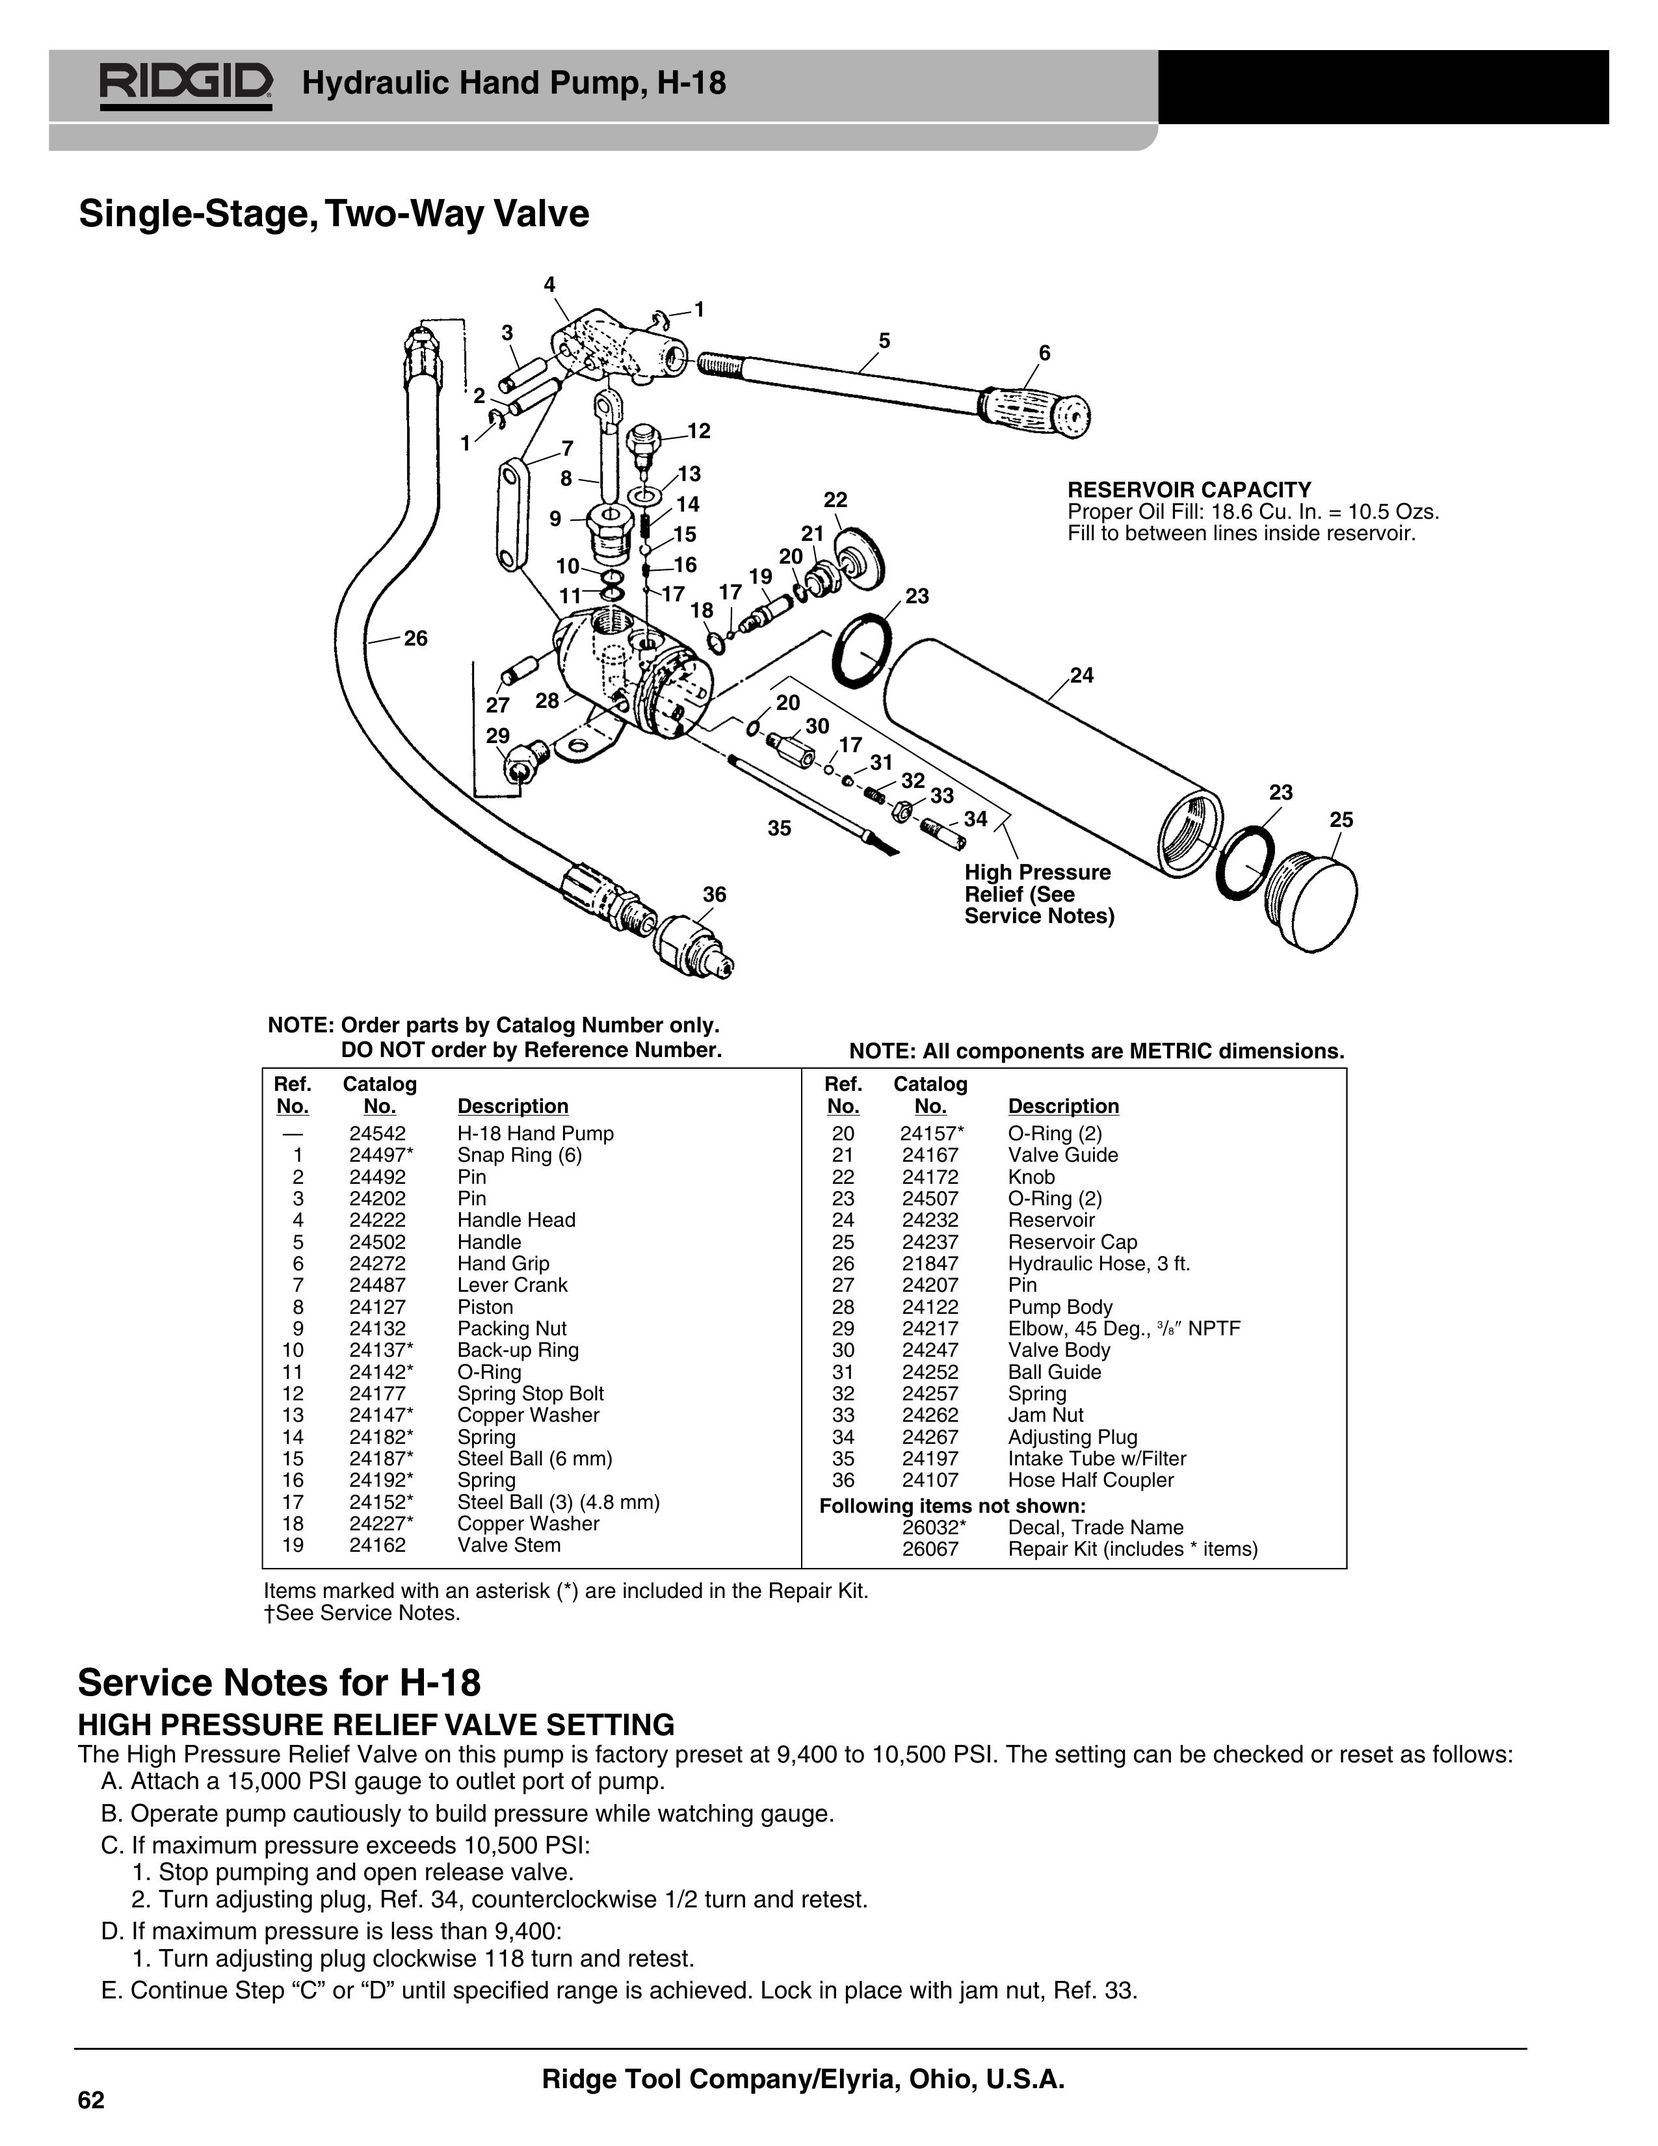 RIDGID BW-1790 Water Pump User Manual